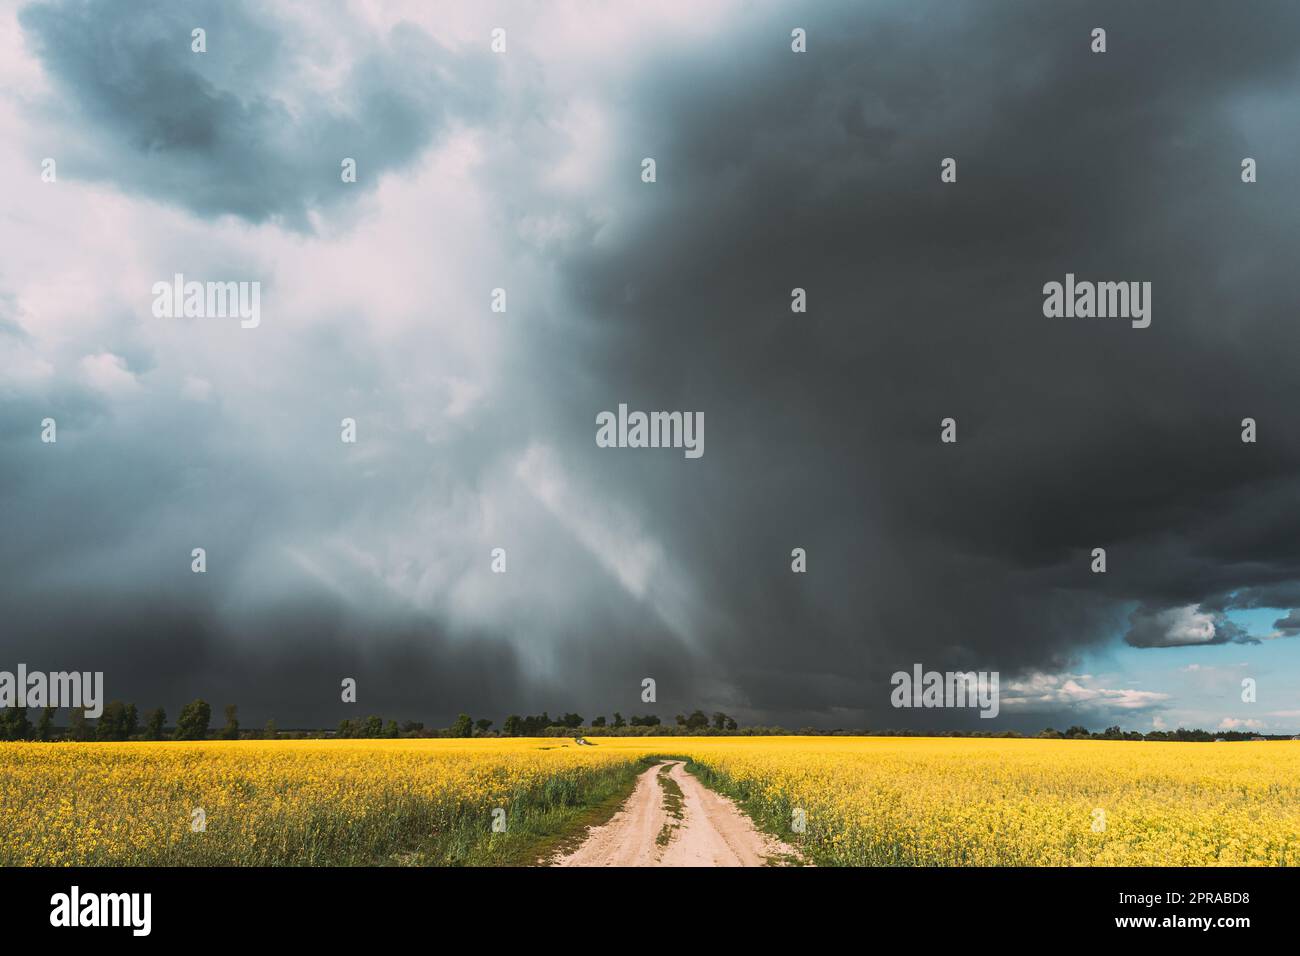 Ciel de pluie spectaculaire avec nuages de pluie et rayons de soleil sur Horizon au-dessus du paysage rural Camola Colza champ de colza. Route de campagne. Concept de prévision agricole et météorologique Banque D'Images